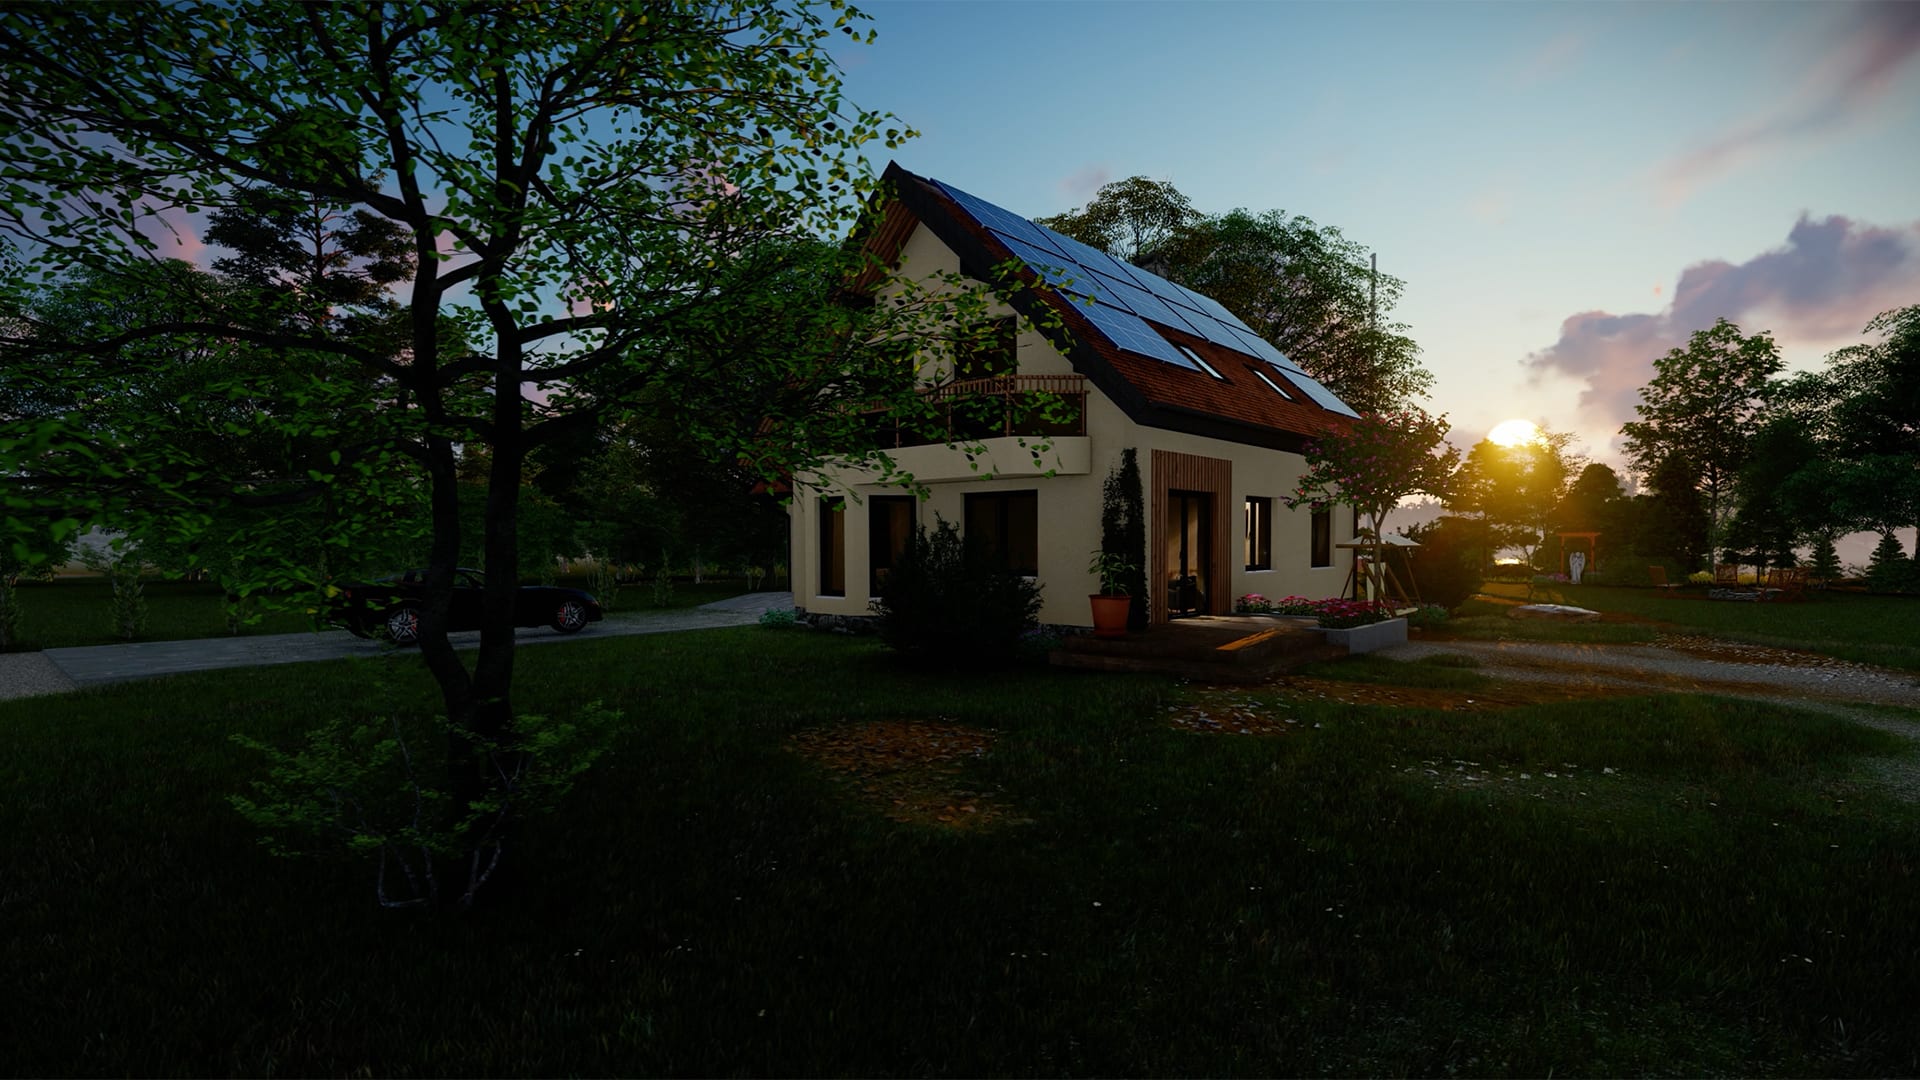 Einfamilienhaus mit Solaranlage auf dem Dach und E-Auto vor der Tür